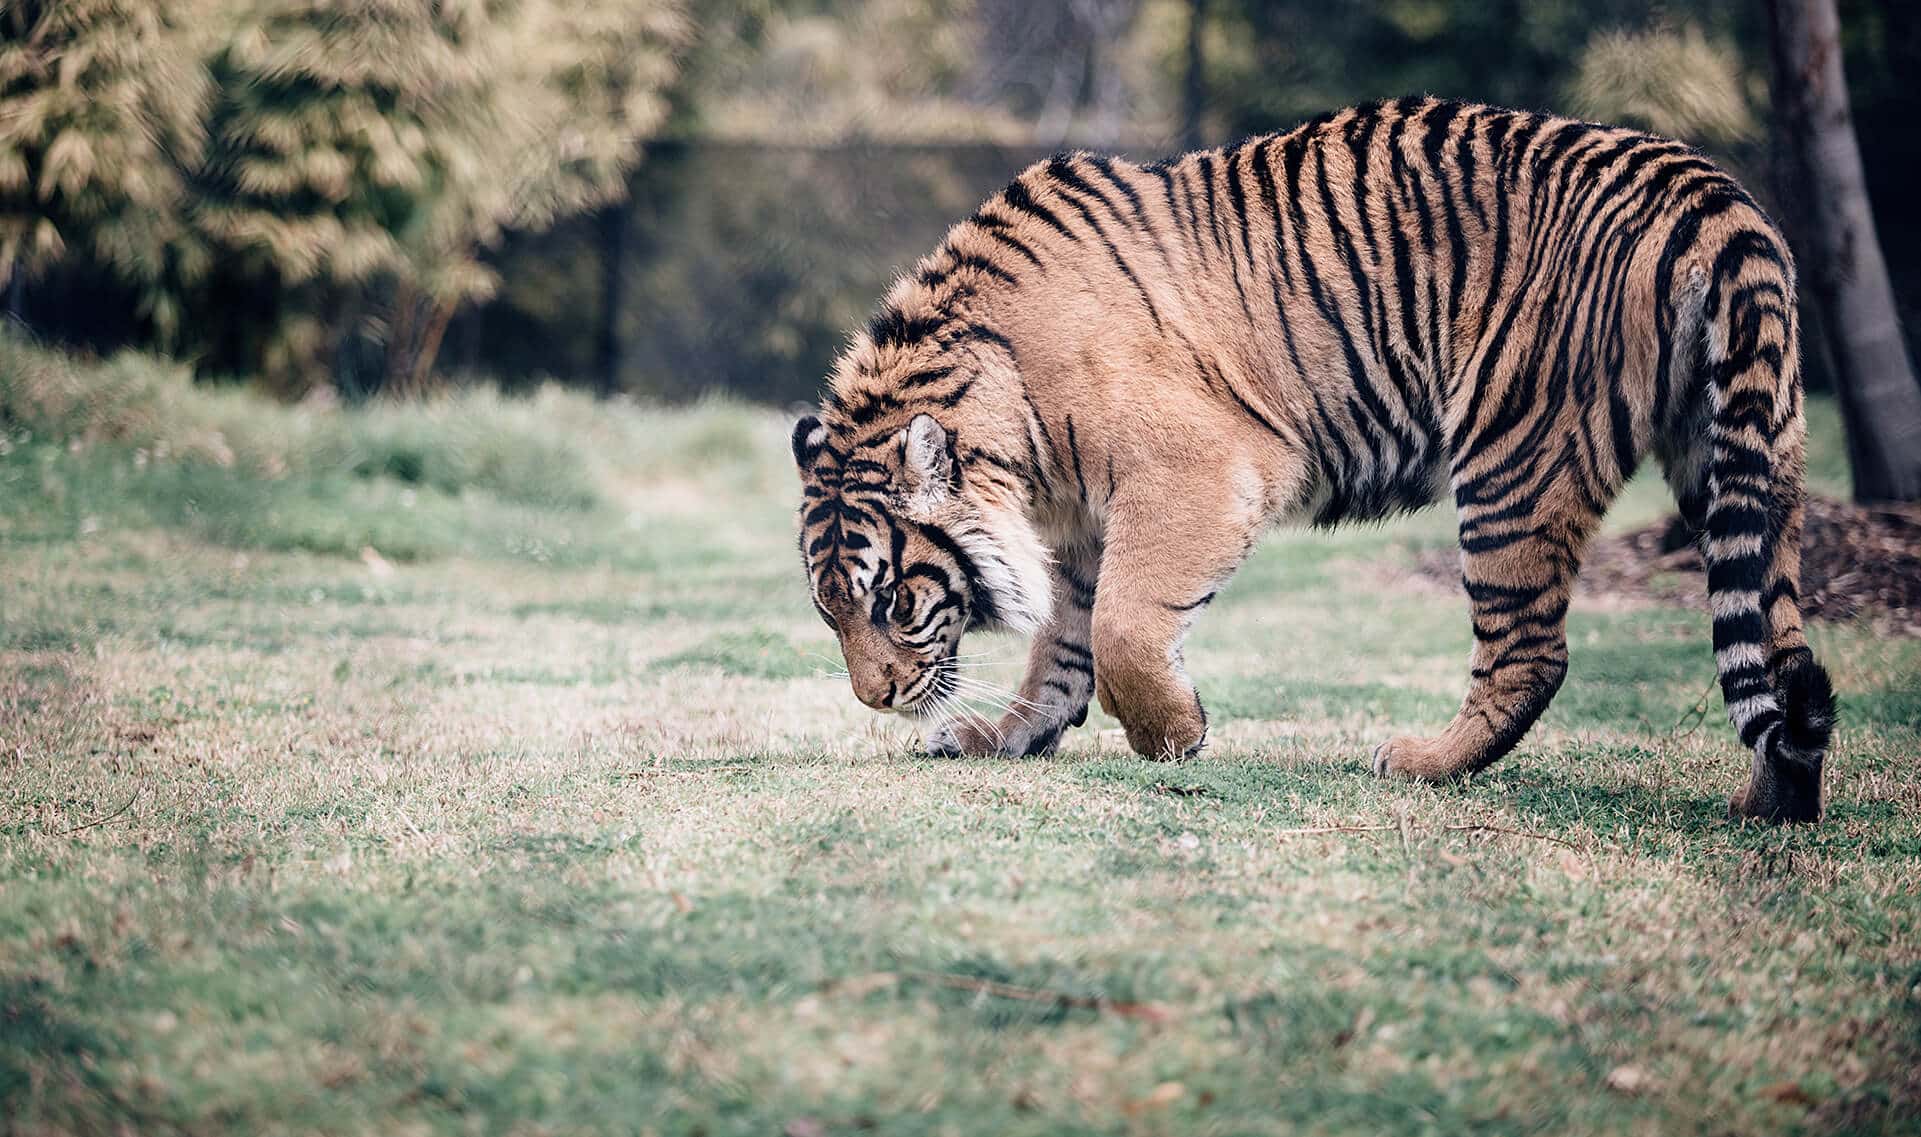 Tiger at Symbio Wildlife Park